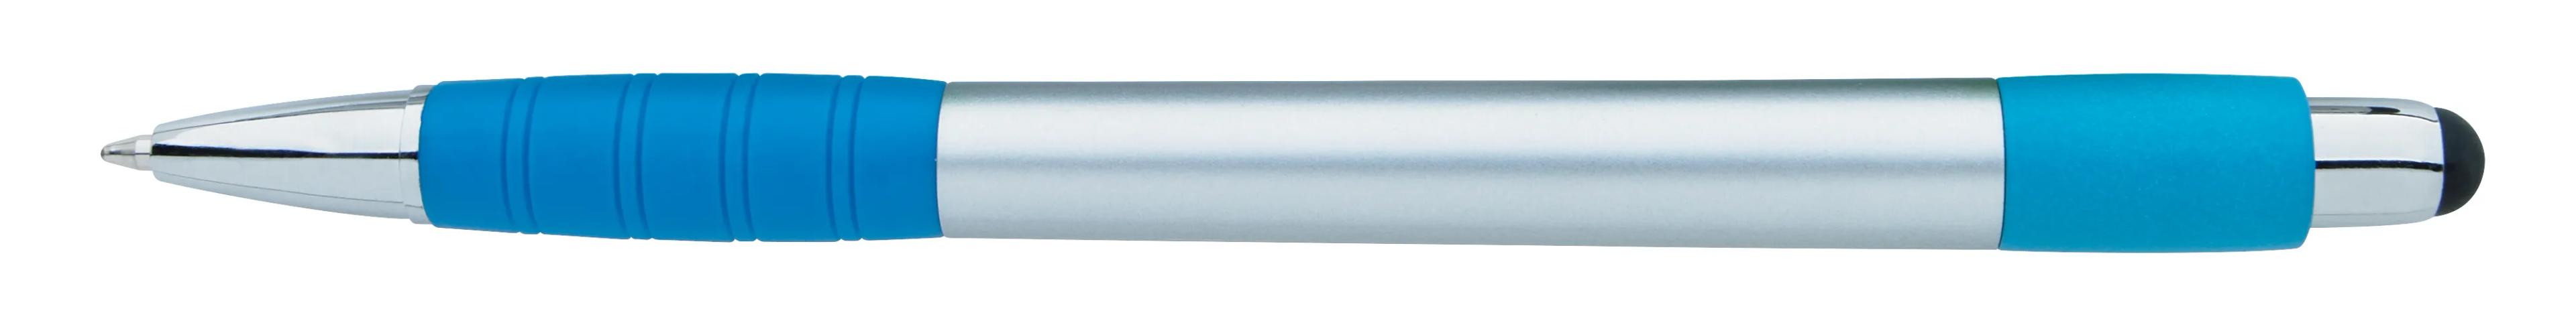 Silver Element Stylus Pen 25 of 53